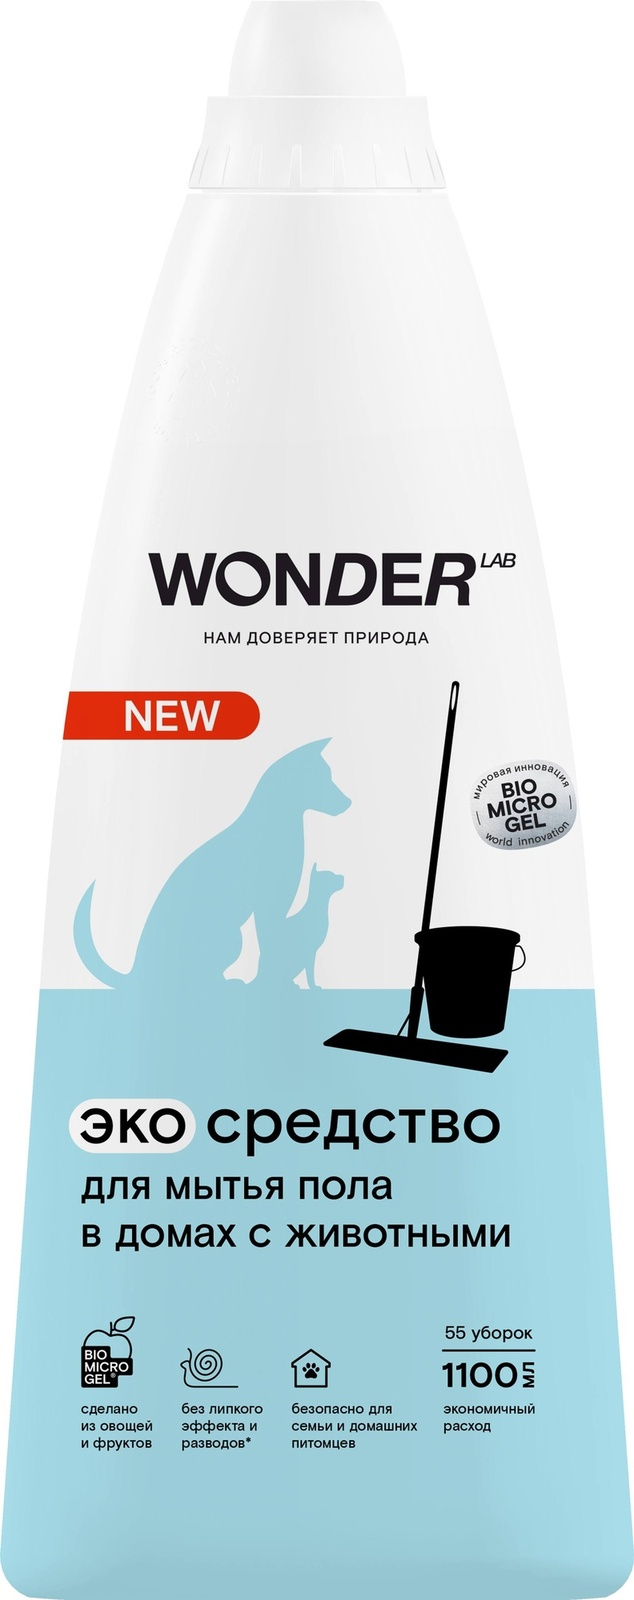 Wonder lab Wonder lab жидкое средство для мытья пола в домах с животными, экологичное, с нейтральным ароматом, концентрированное, 1000 мл (1,11 кг)